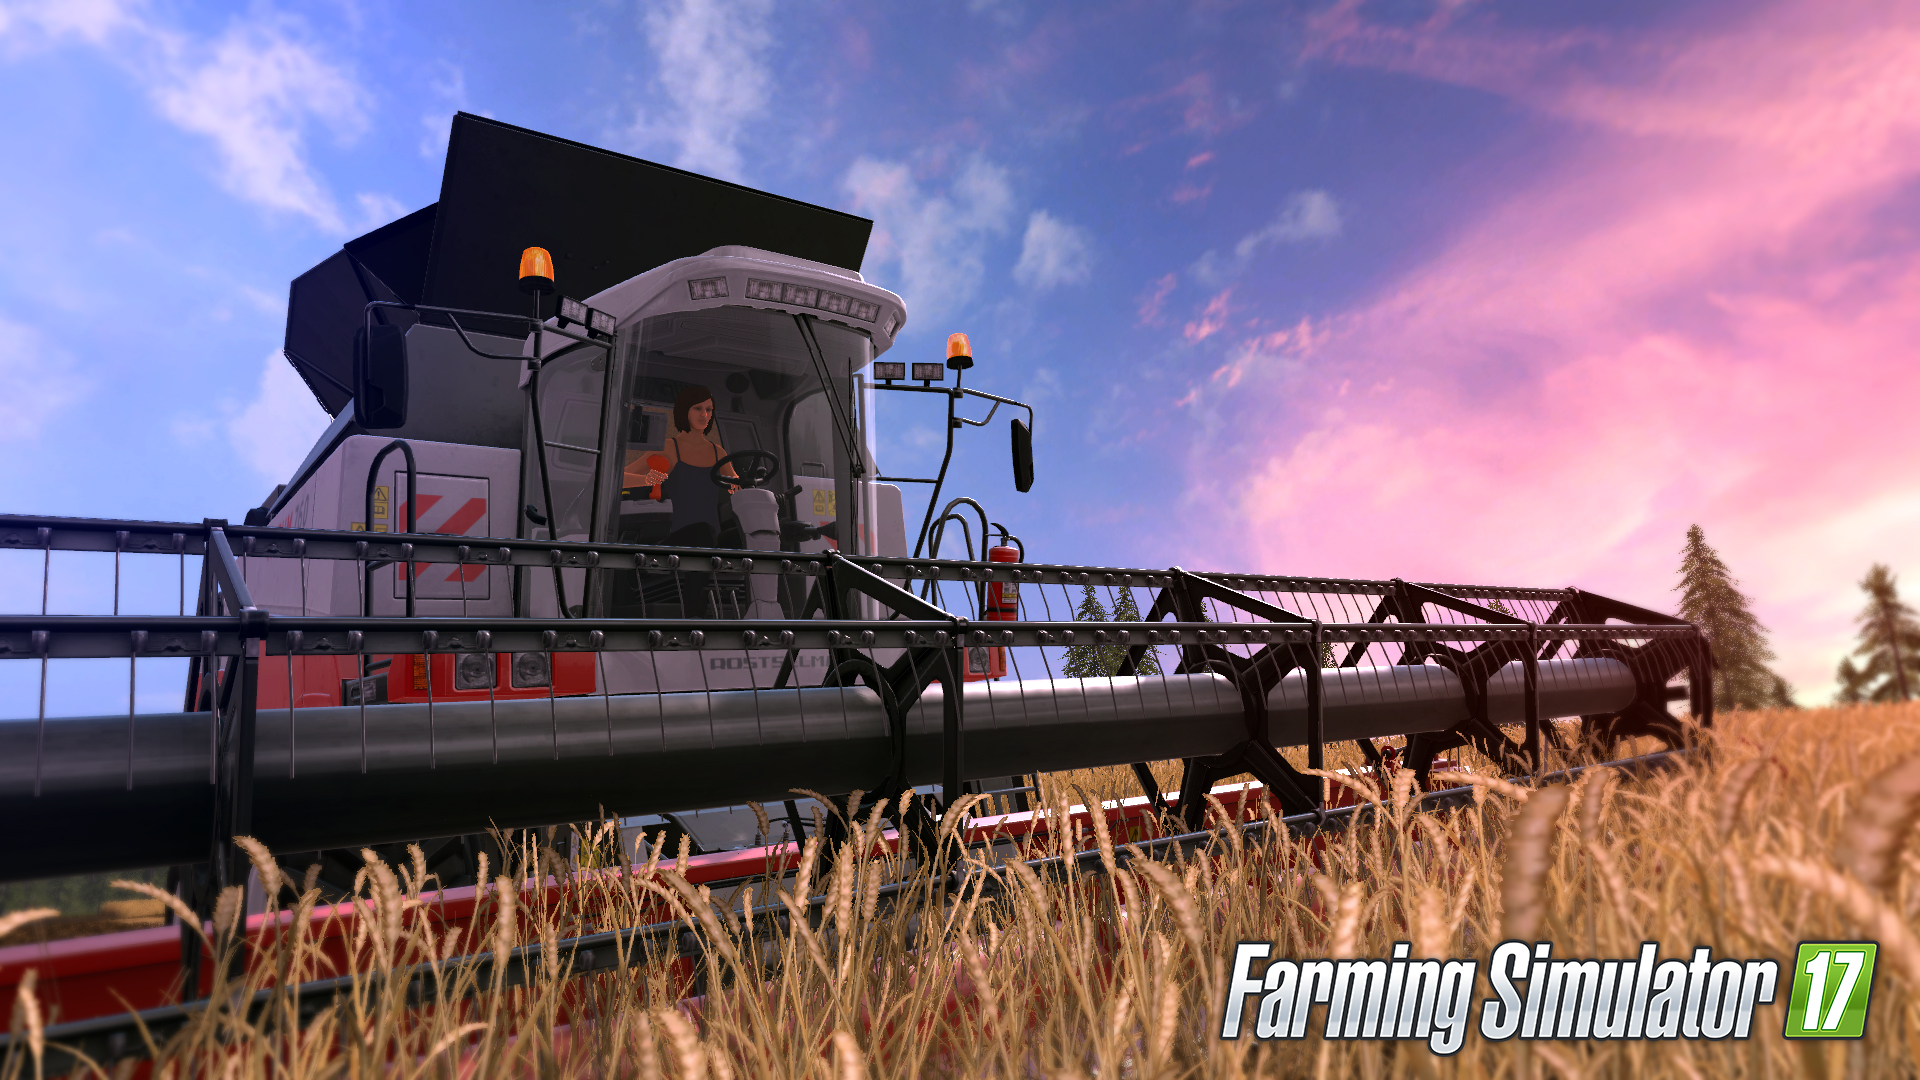 Farming Simulator 17, czyli... zabawa w rolnika